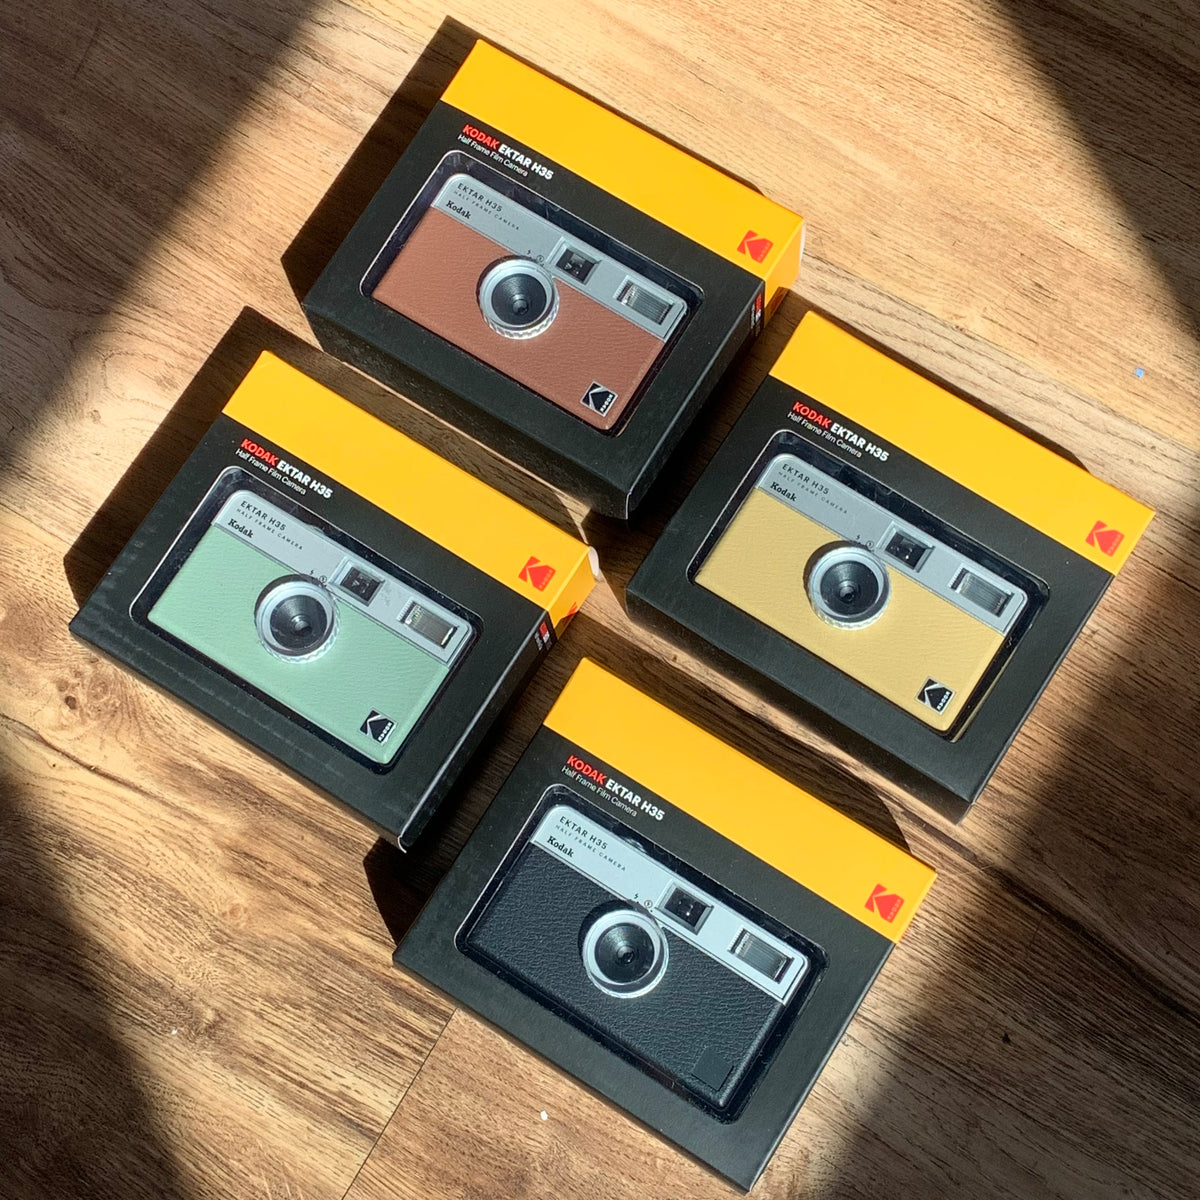 Kodak Ektar H35 - Half-Frame 35mm Film Camera - Analogue Wonderland